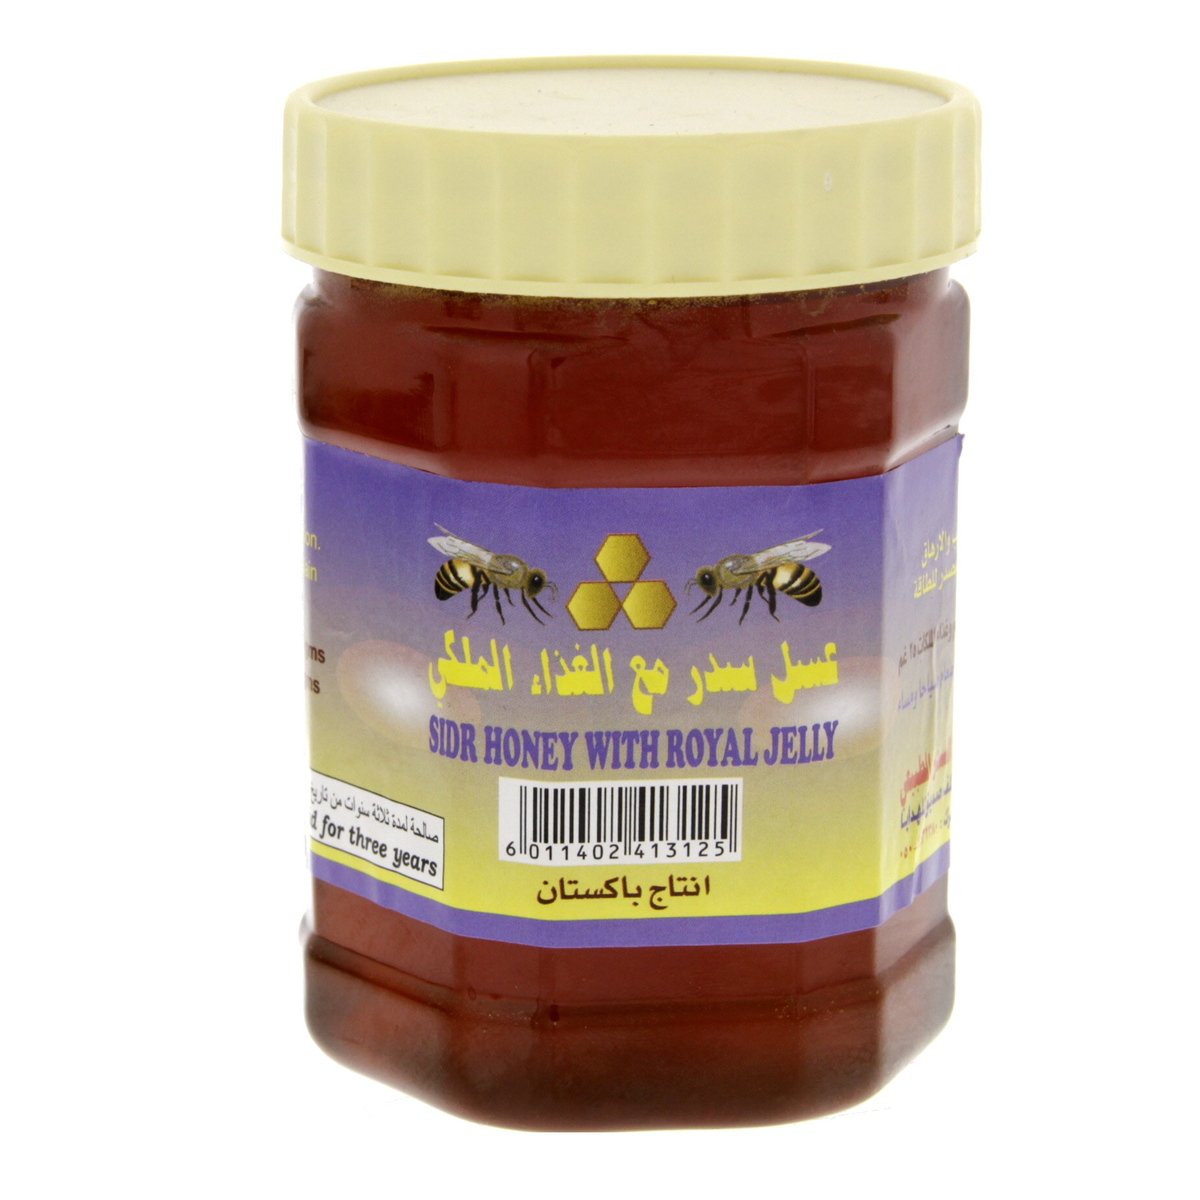 Buy Al Sidr Honey With Royal Jelly 500 g Online at Best Price | Honey | Lulu UAE in UAE